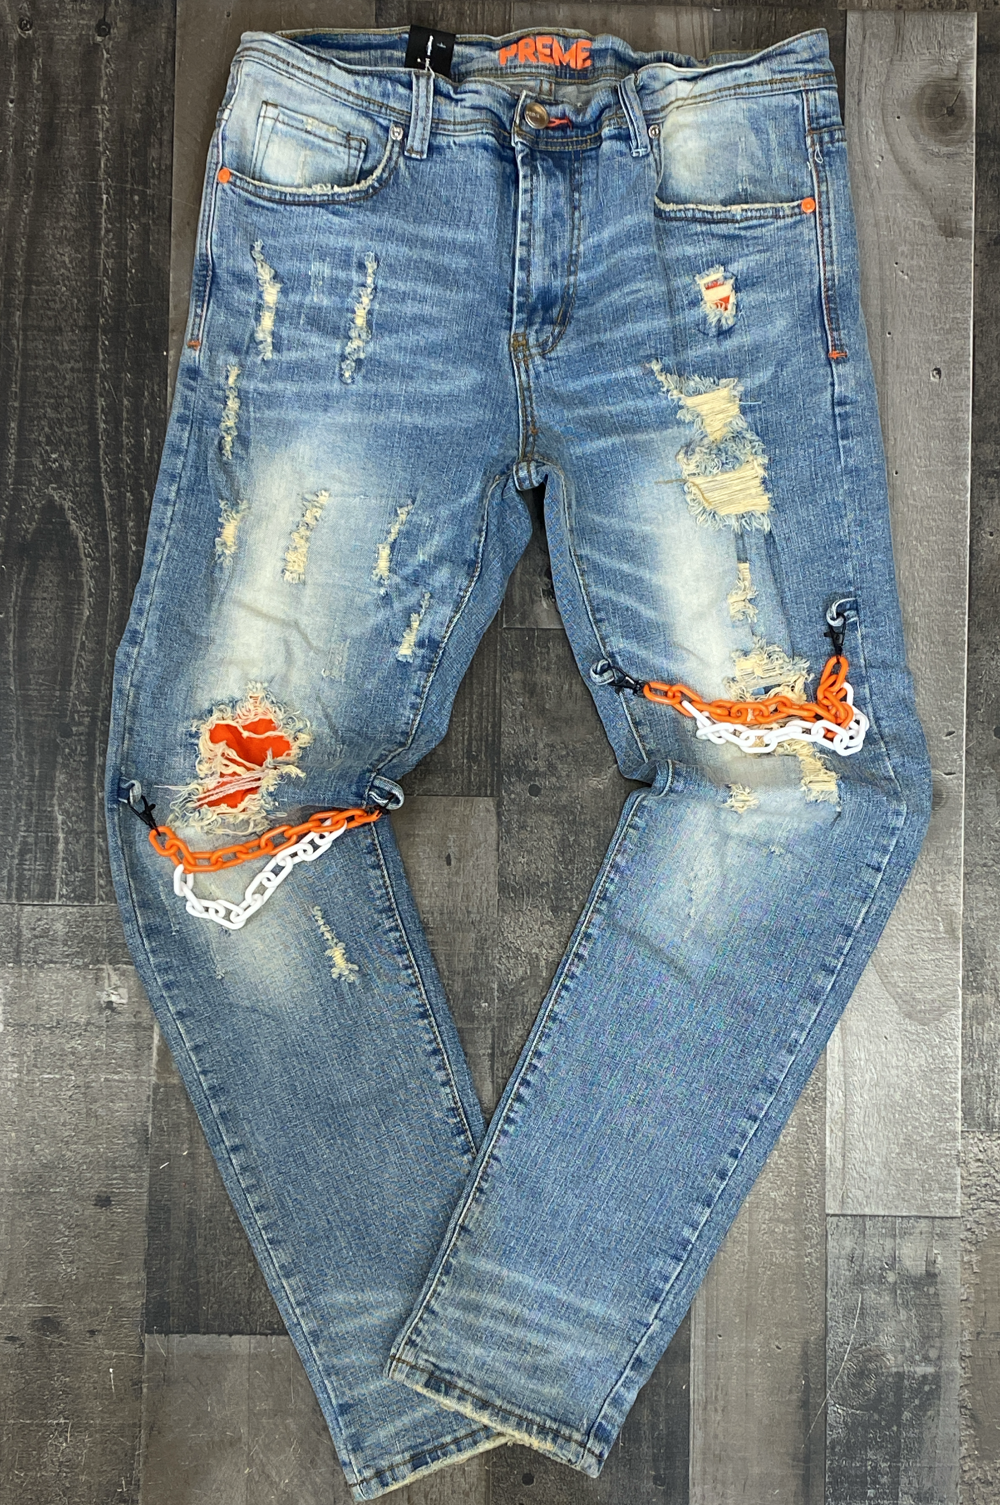 Preme- colored chain jeans